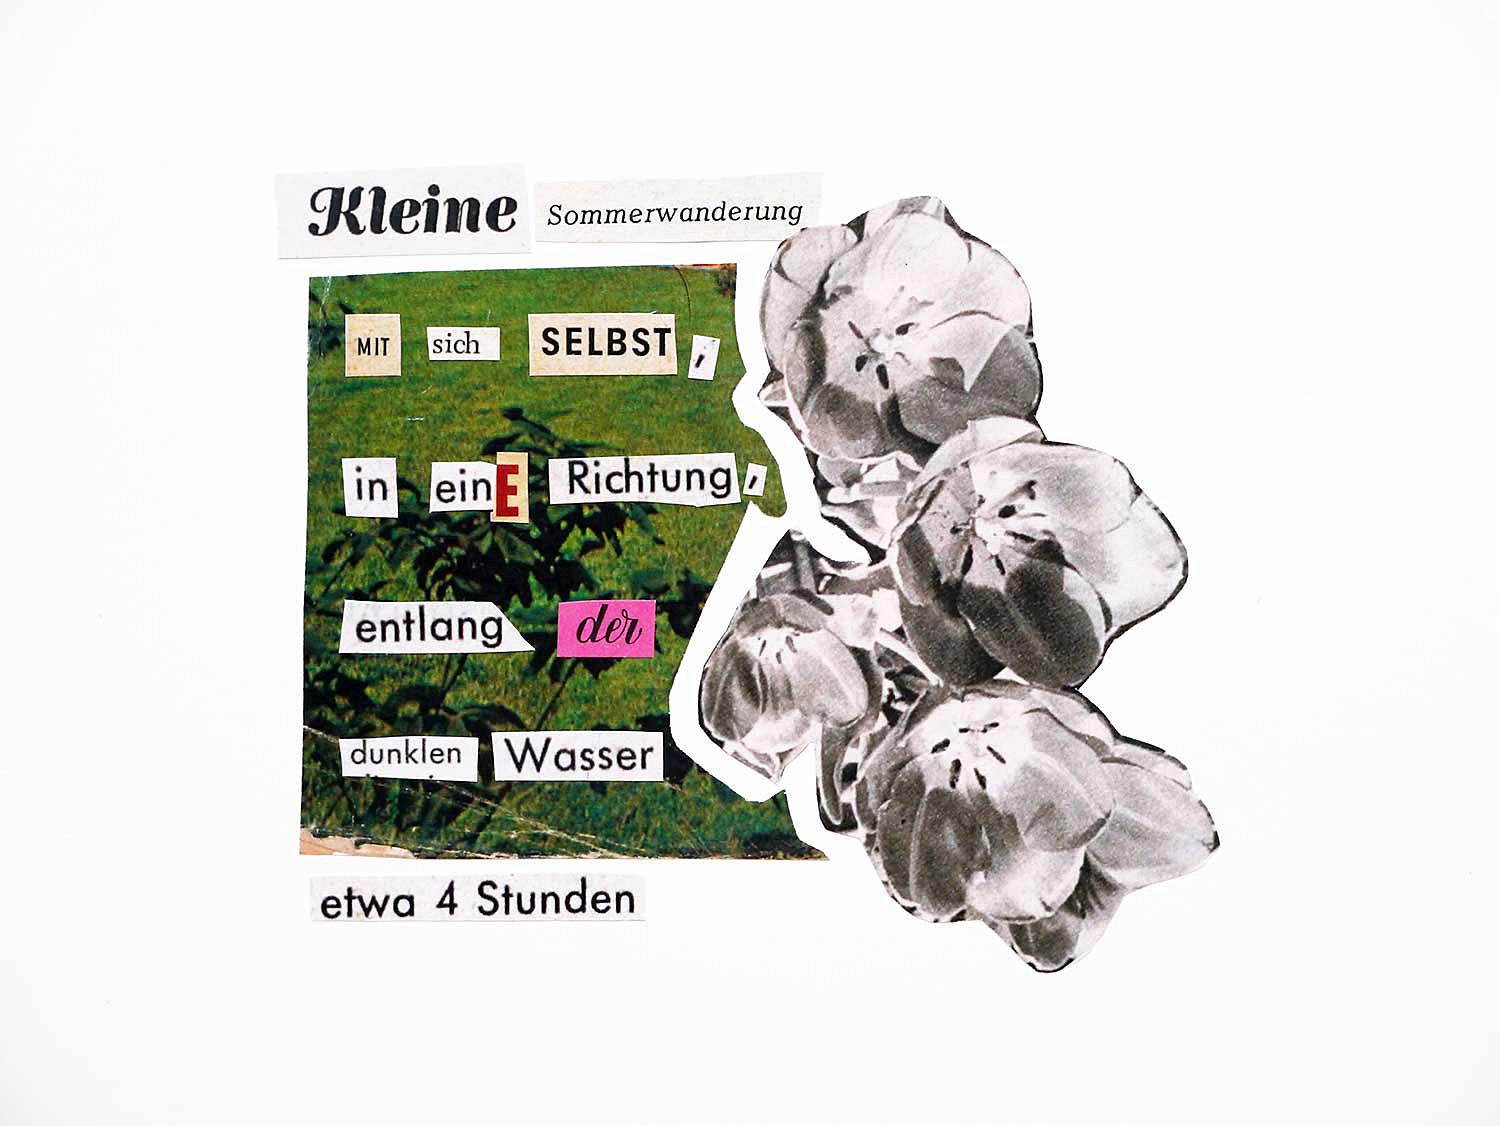 Collage 'Kleine Sommerwanderung' Angelika Hasse 2015 word art